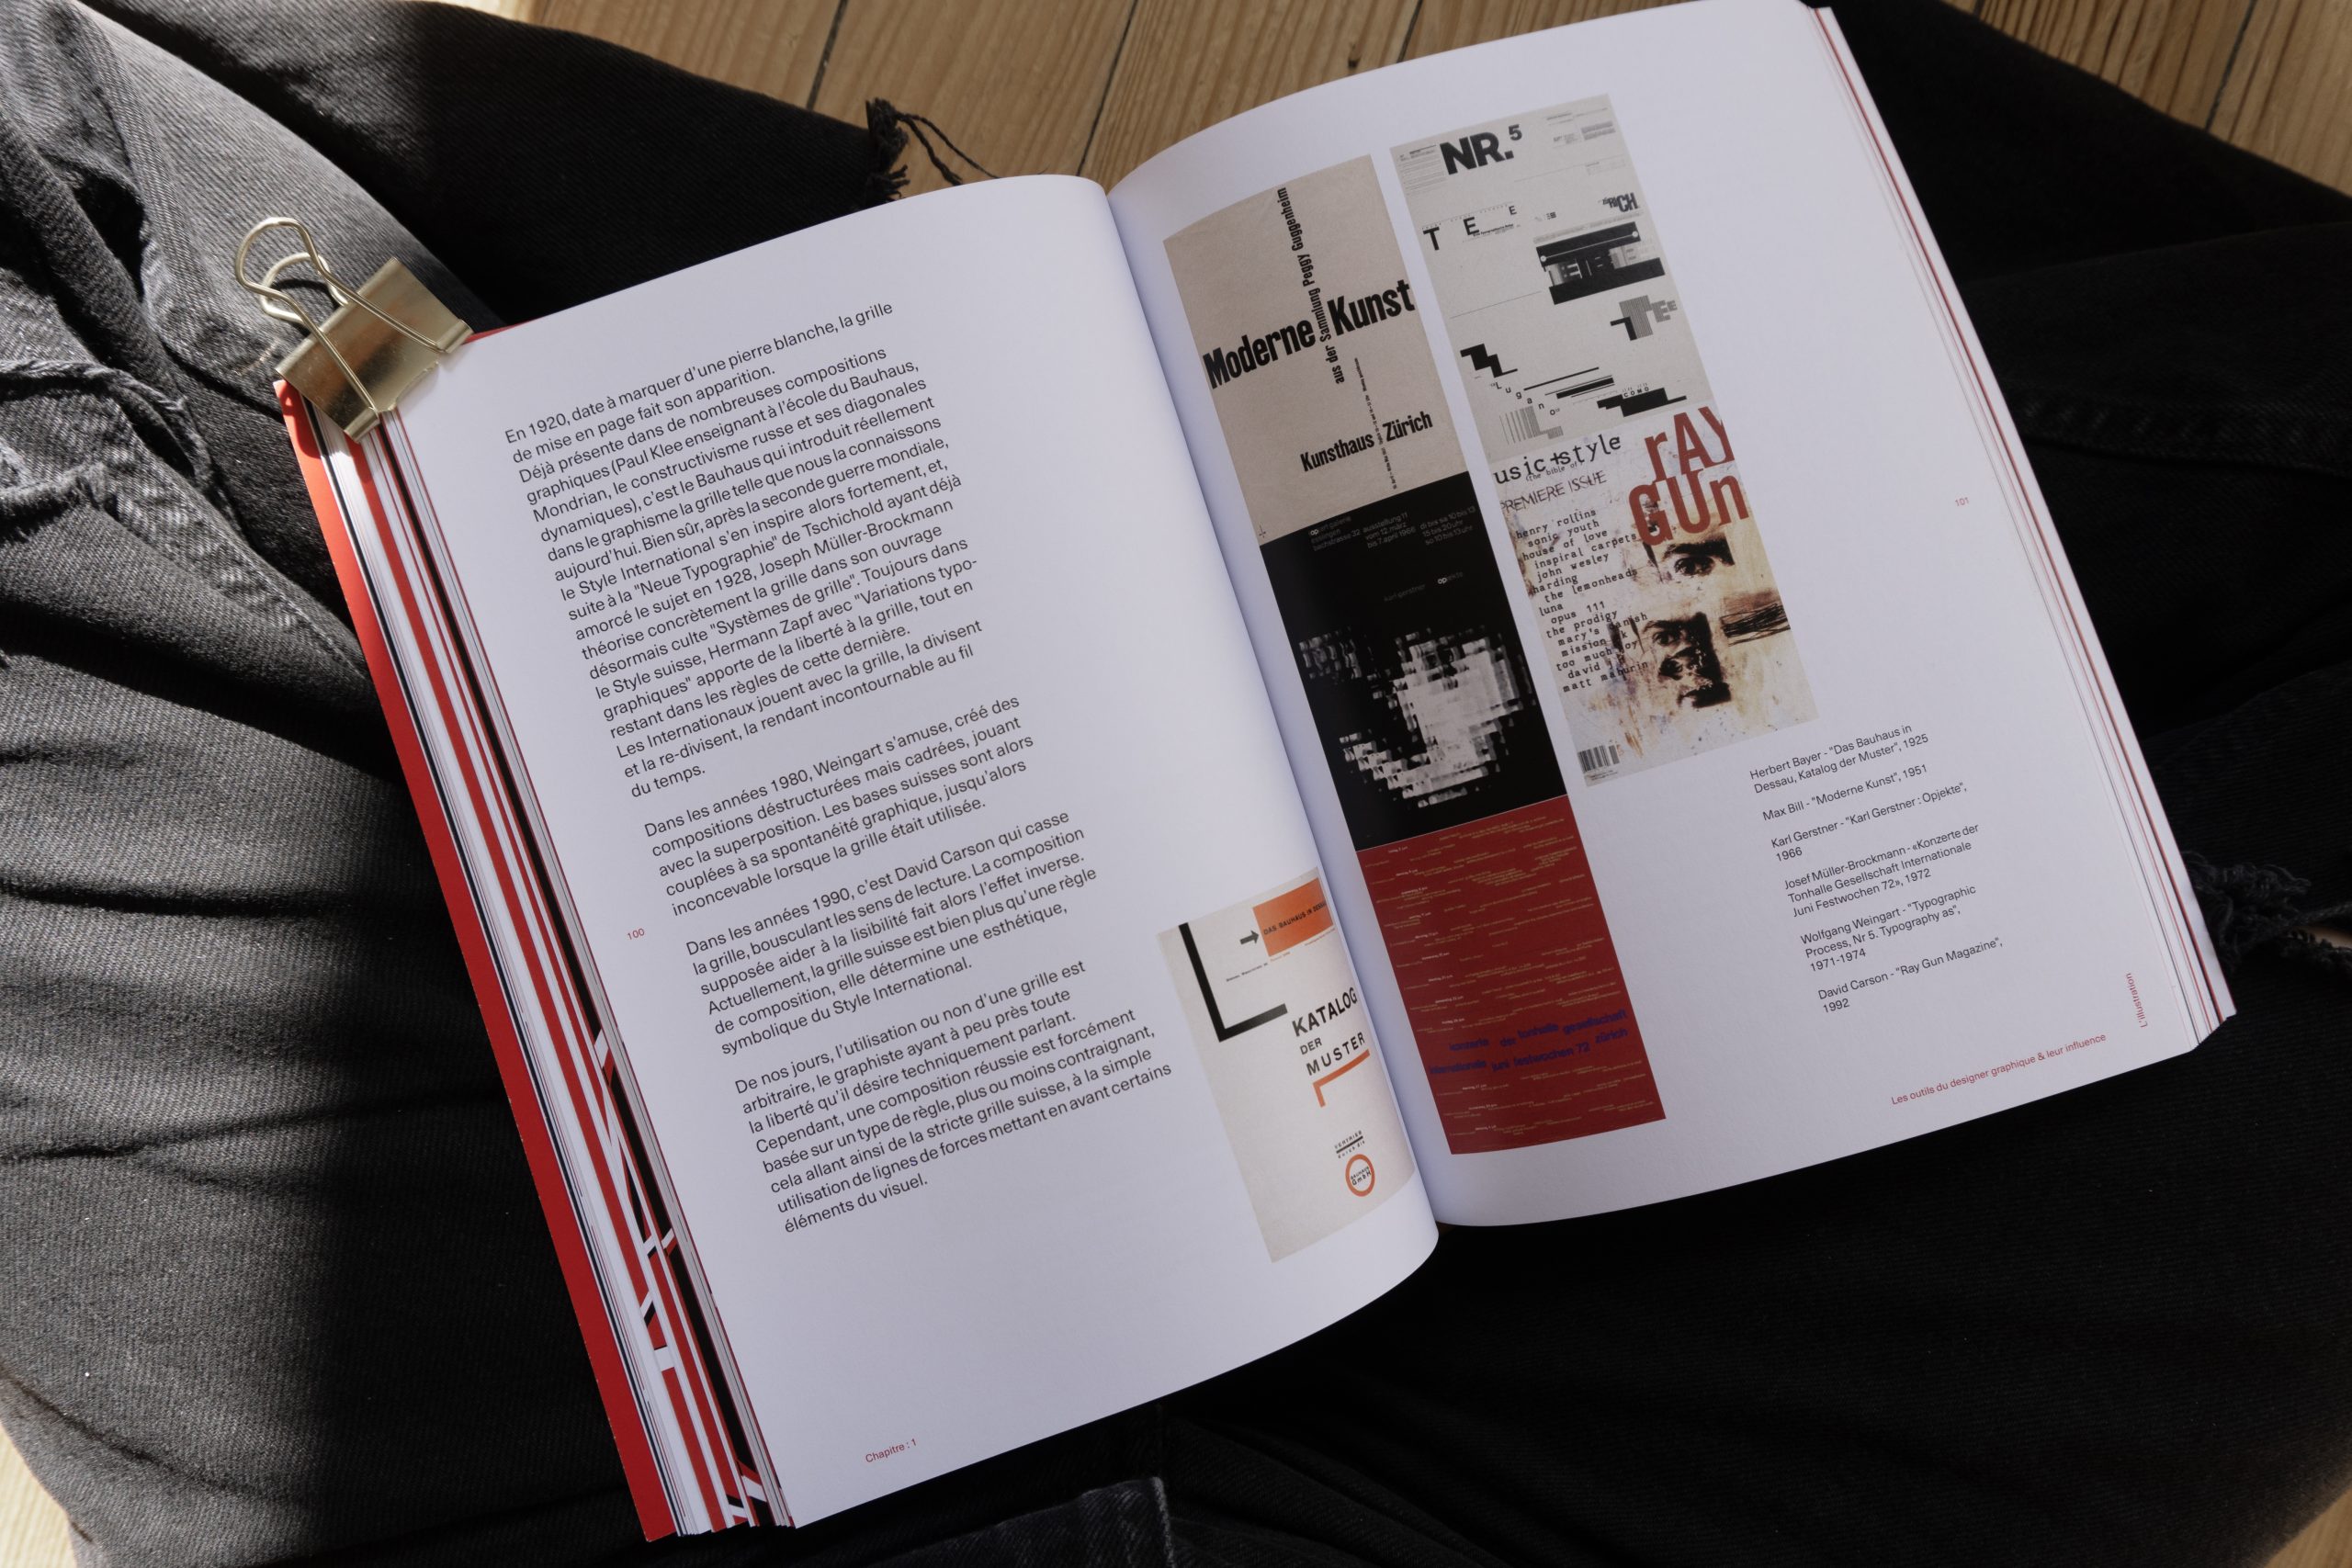 Visuel de l'intérieur du livre montrant une double page du chapitre sur la composition.